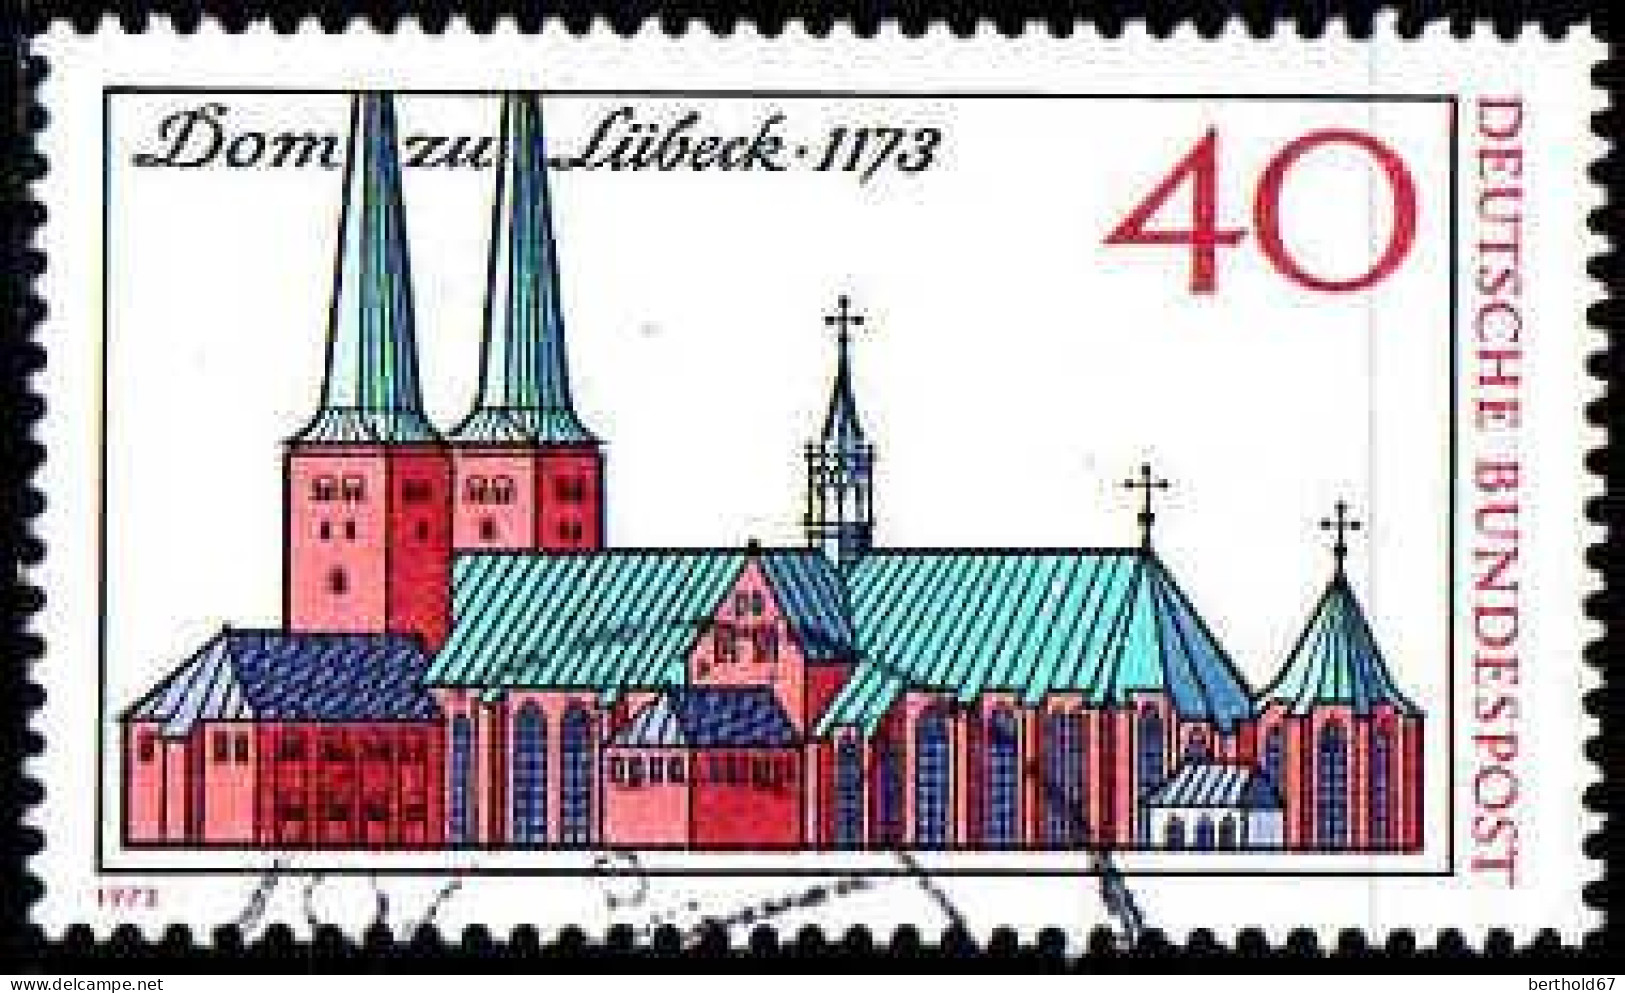 RFA Poste Obl Yv: 629 Dom Zu Lübeck (Beau Cachet Rond) - Oblitérés